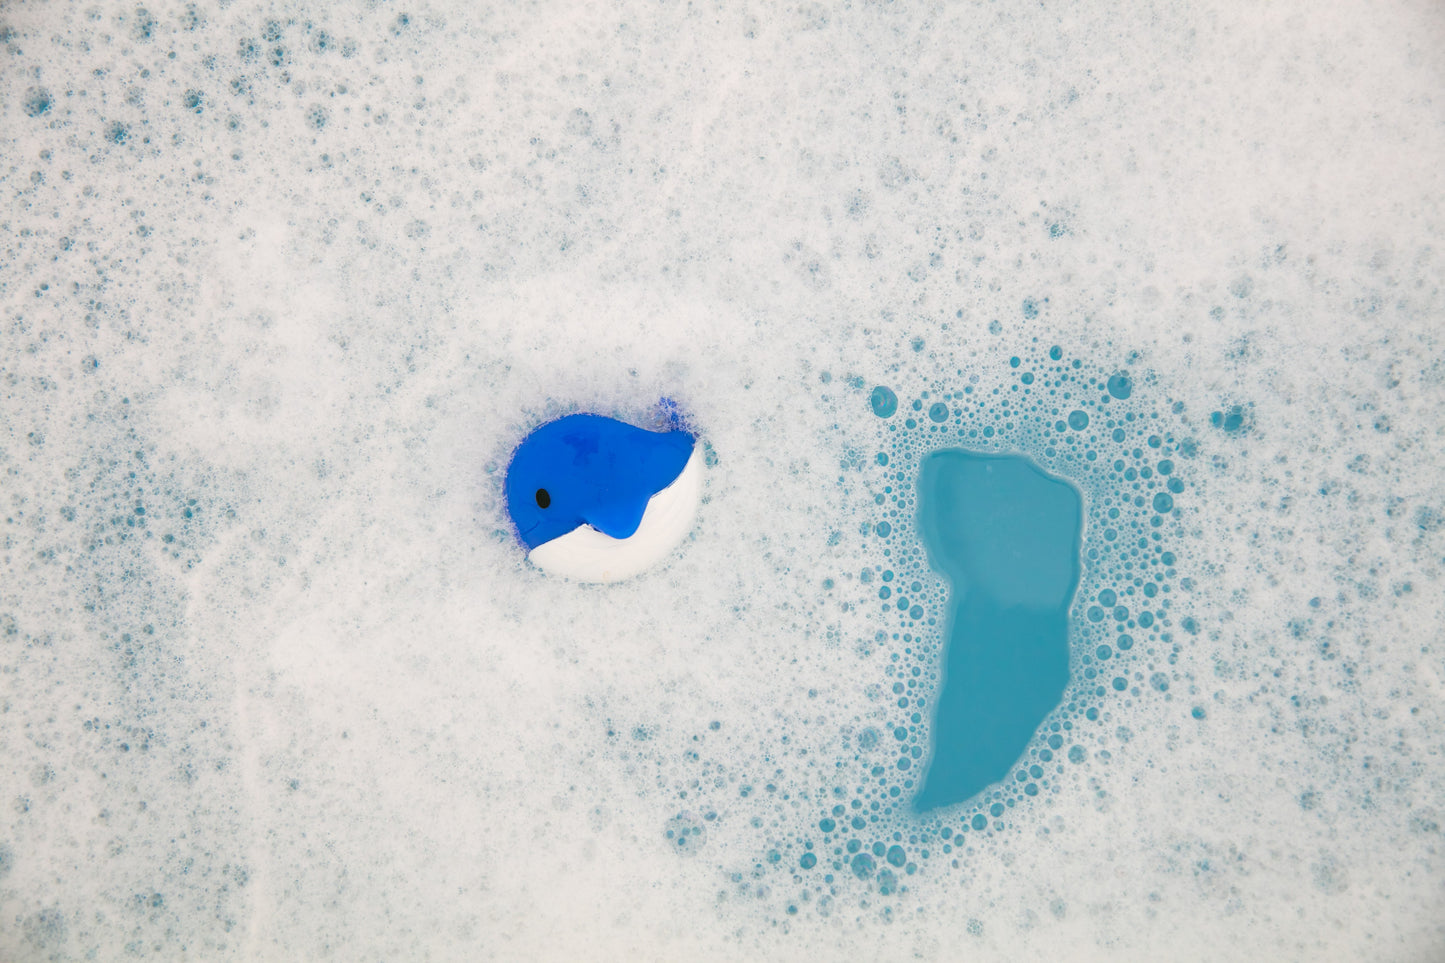 Nahthing Project - Plop Plop natural color bubble bath ocean blue